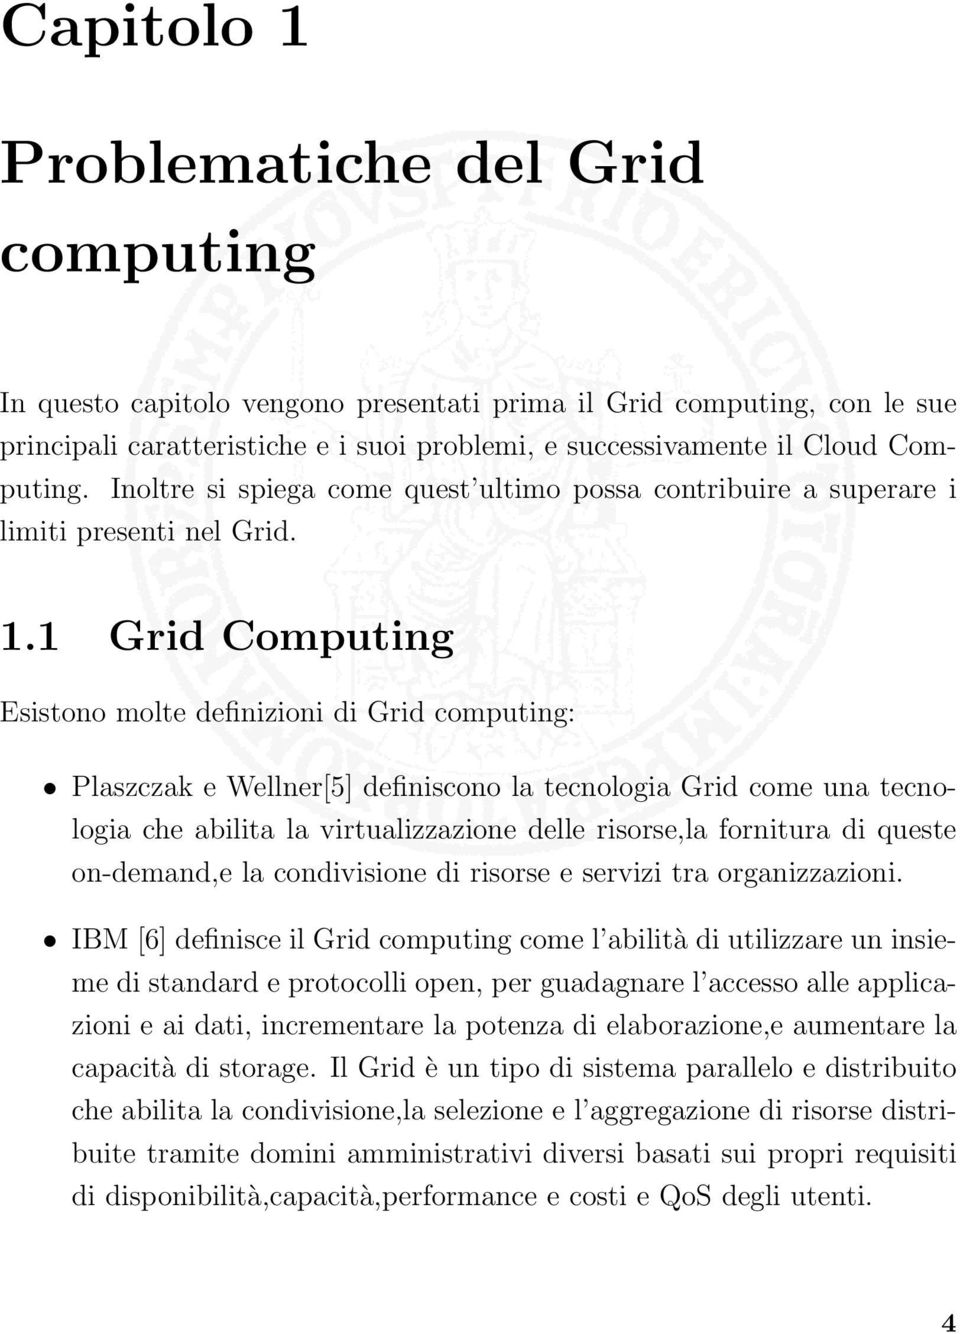 1 Grid Computing Esistono molte definizioni di Grid computing: Plaszczak e Wellner[5] definiscono la tecnologia Grid come una tecnologia che abilita la virtualizzazione delle risorse,la fornitura di